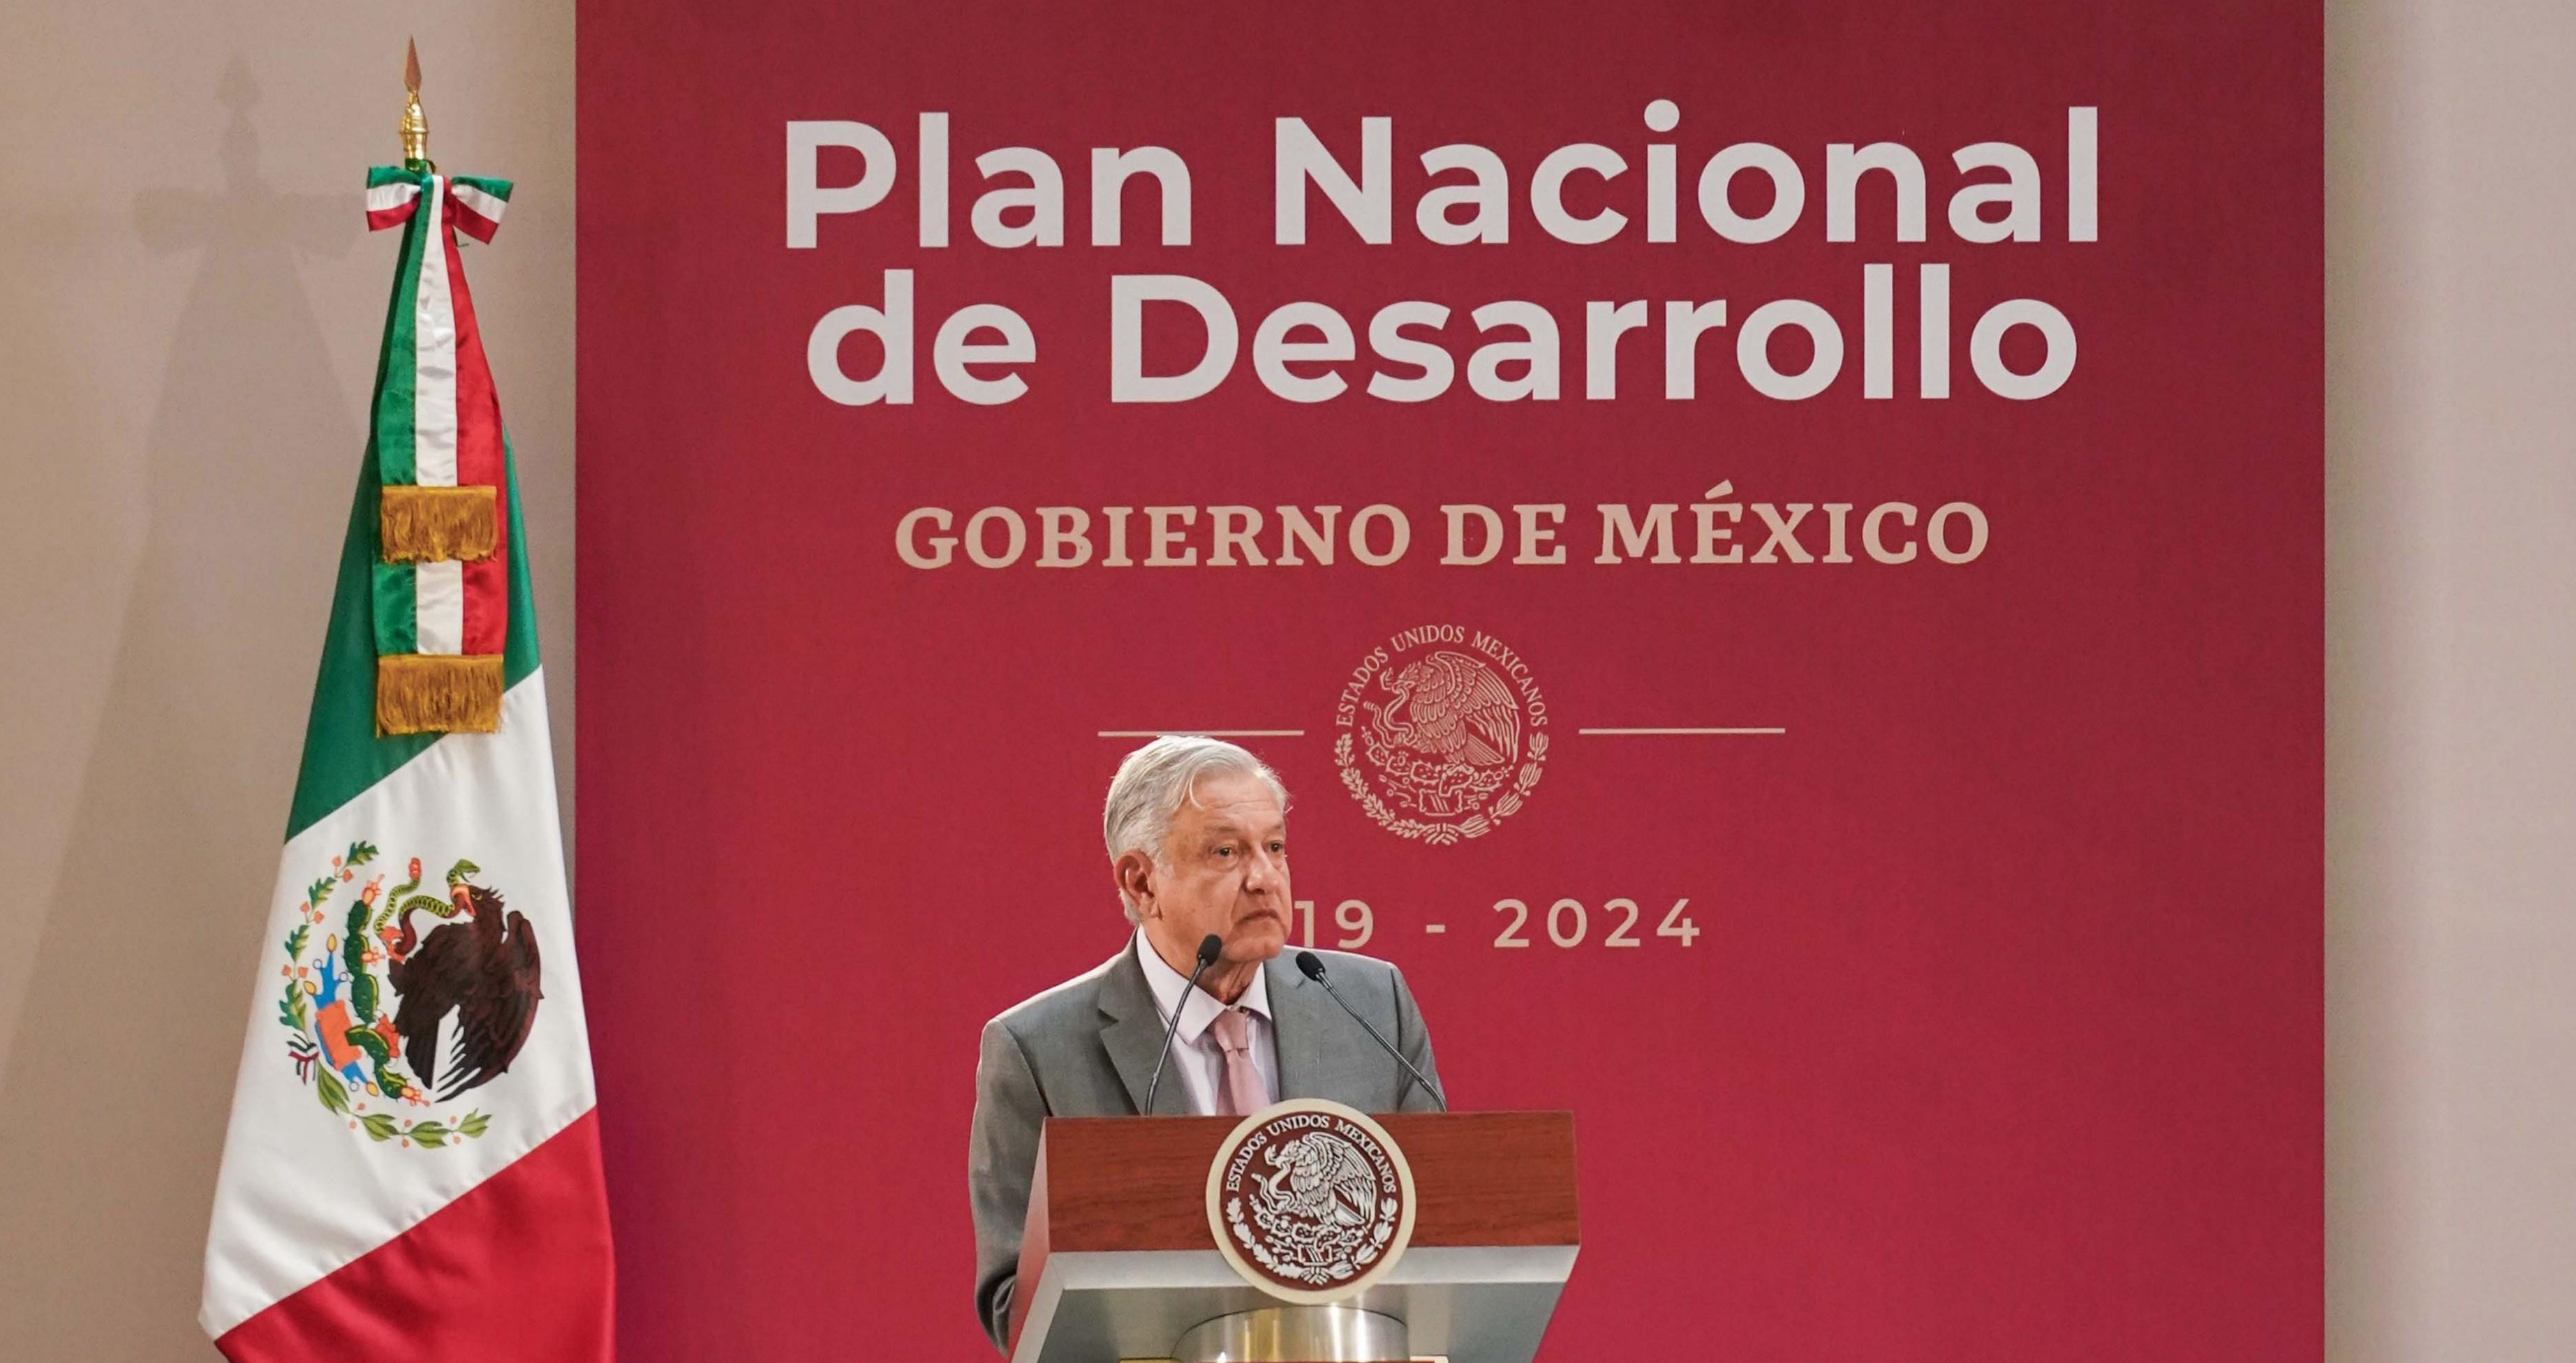  López Obrador declara “formalmente” el fin de la política neoliberal en México